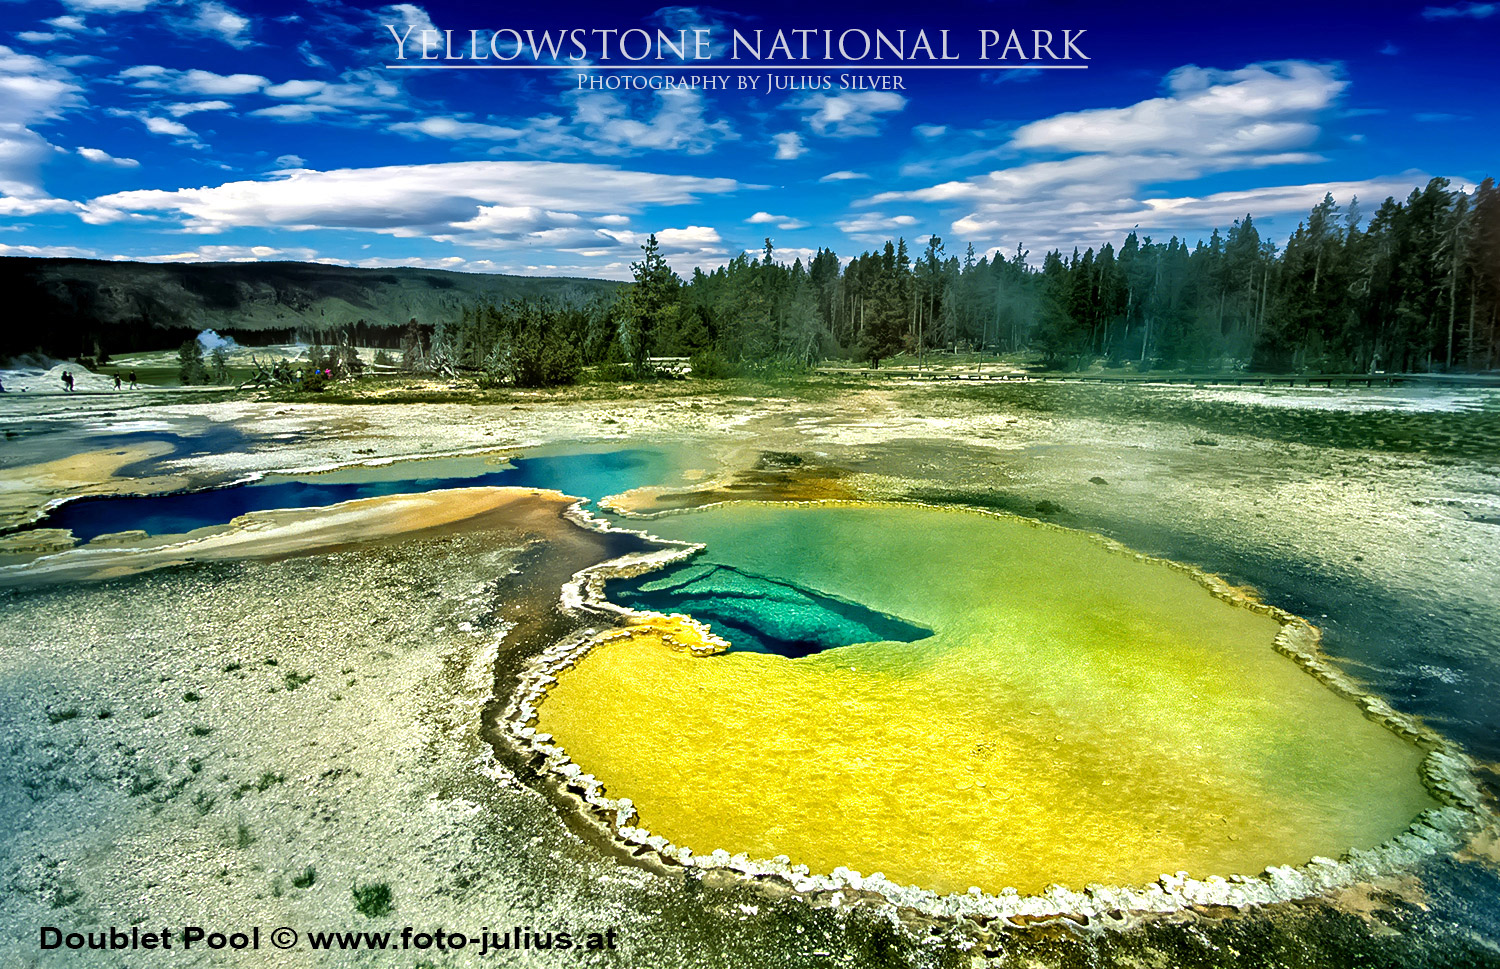 y031a_Doublet_Pool_Yellowstone.jpg, 726kB